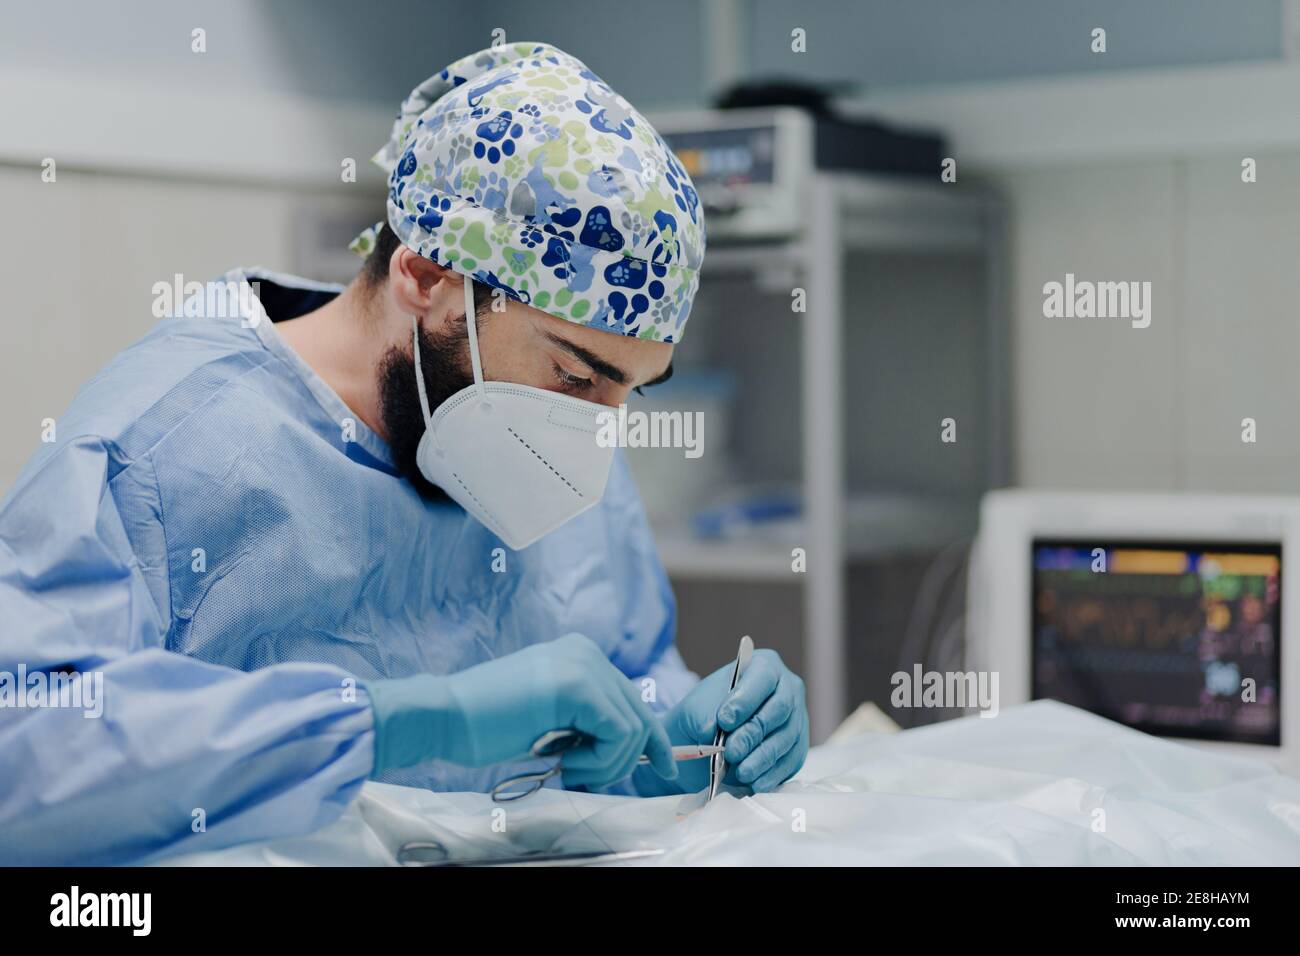 Veterinario maschile focalizzato in uniforme e maschera respiratoria utilizzando medico strumenti durante la chirurgia in ospedale Foto Stock